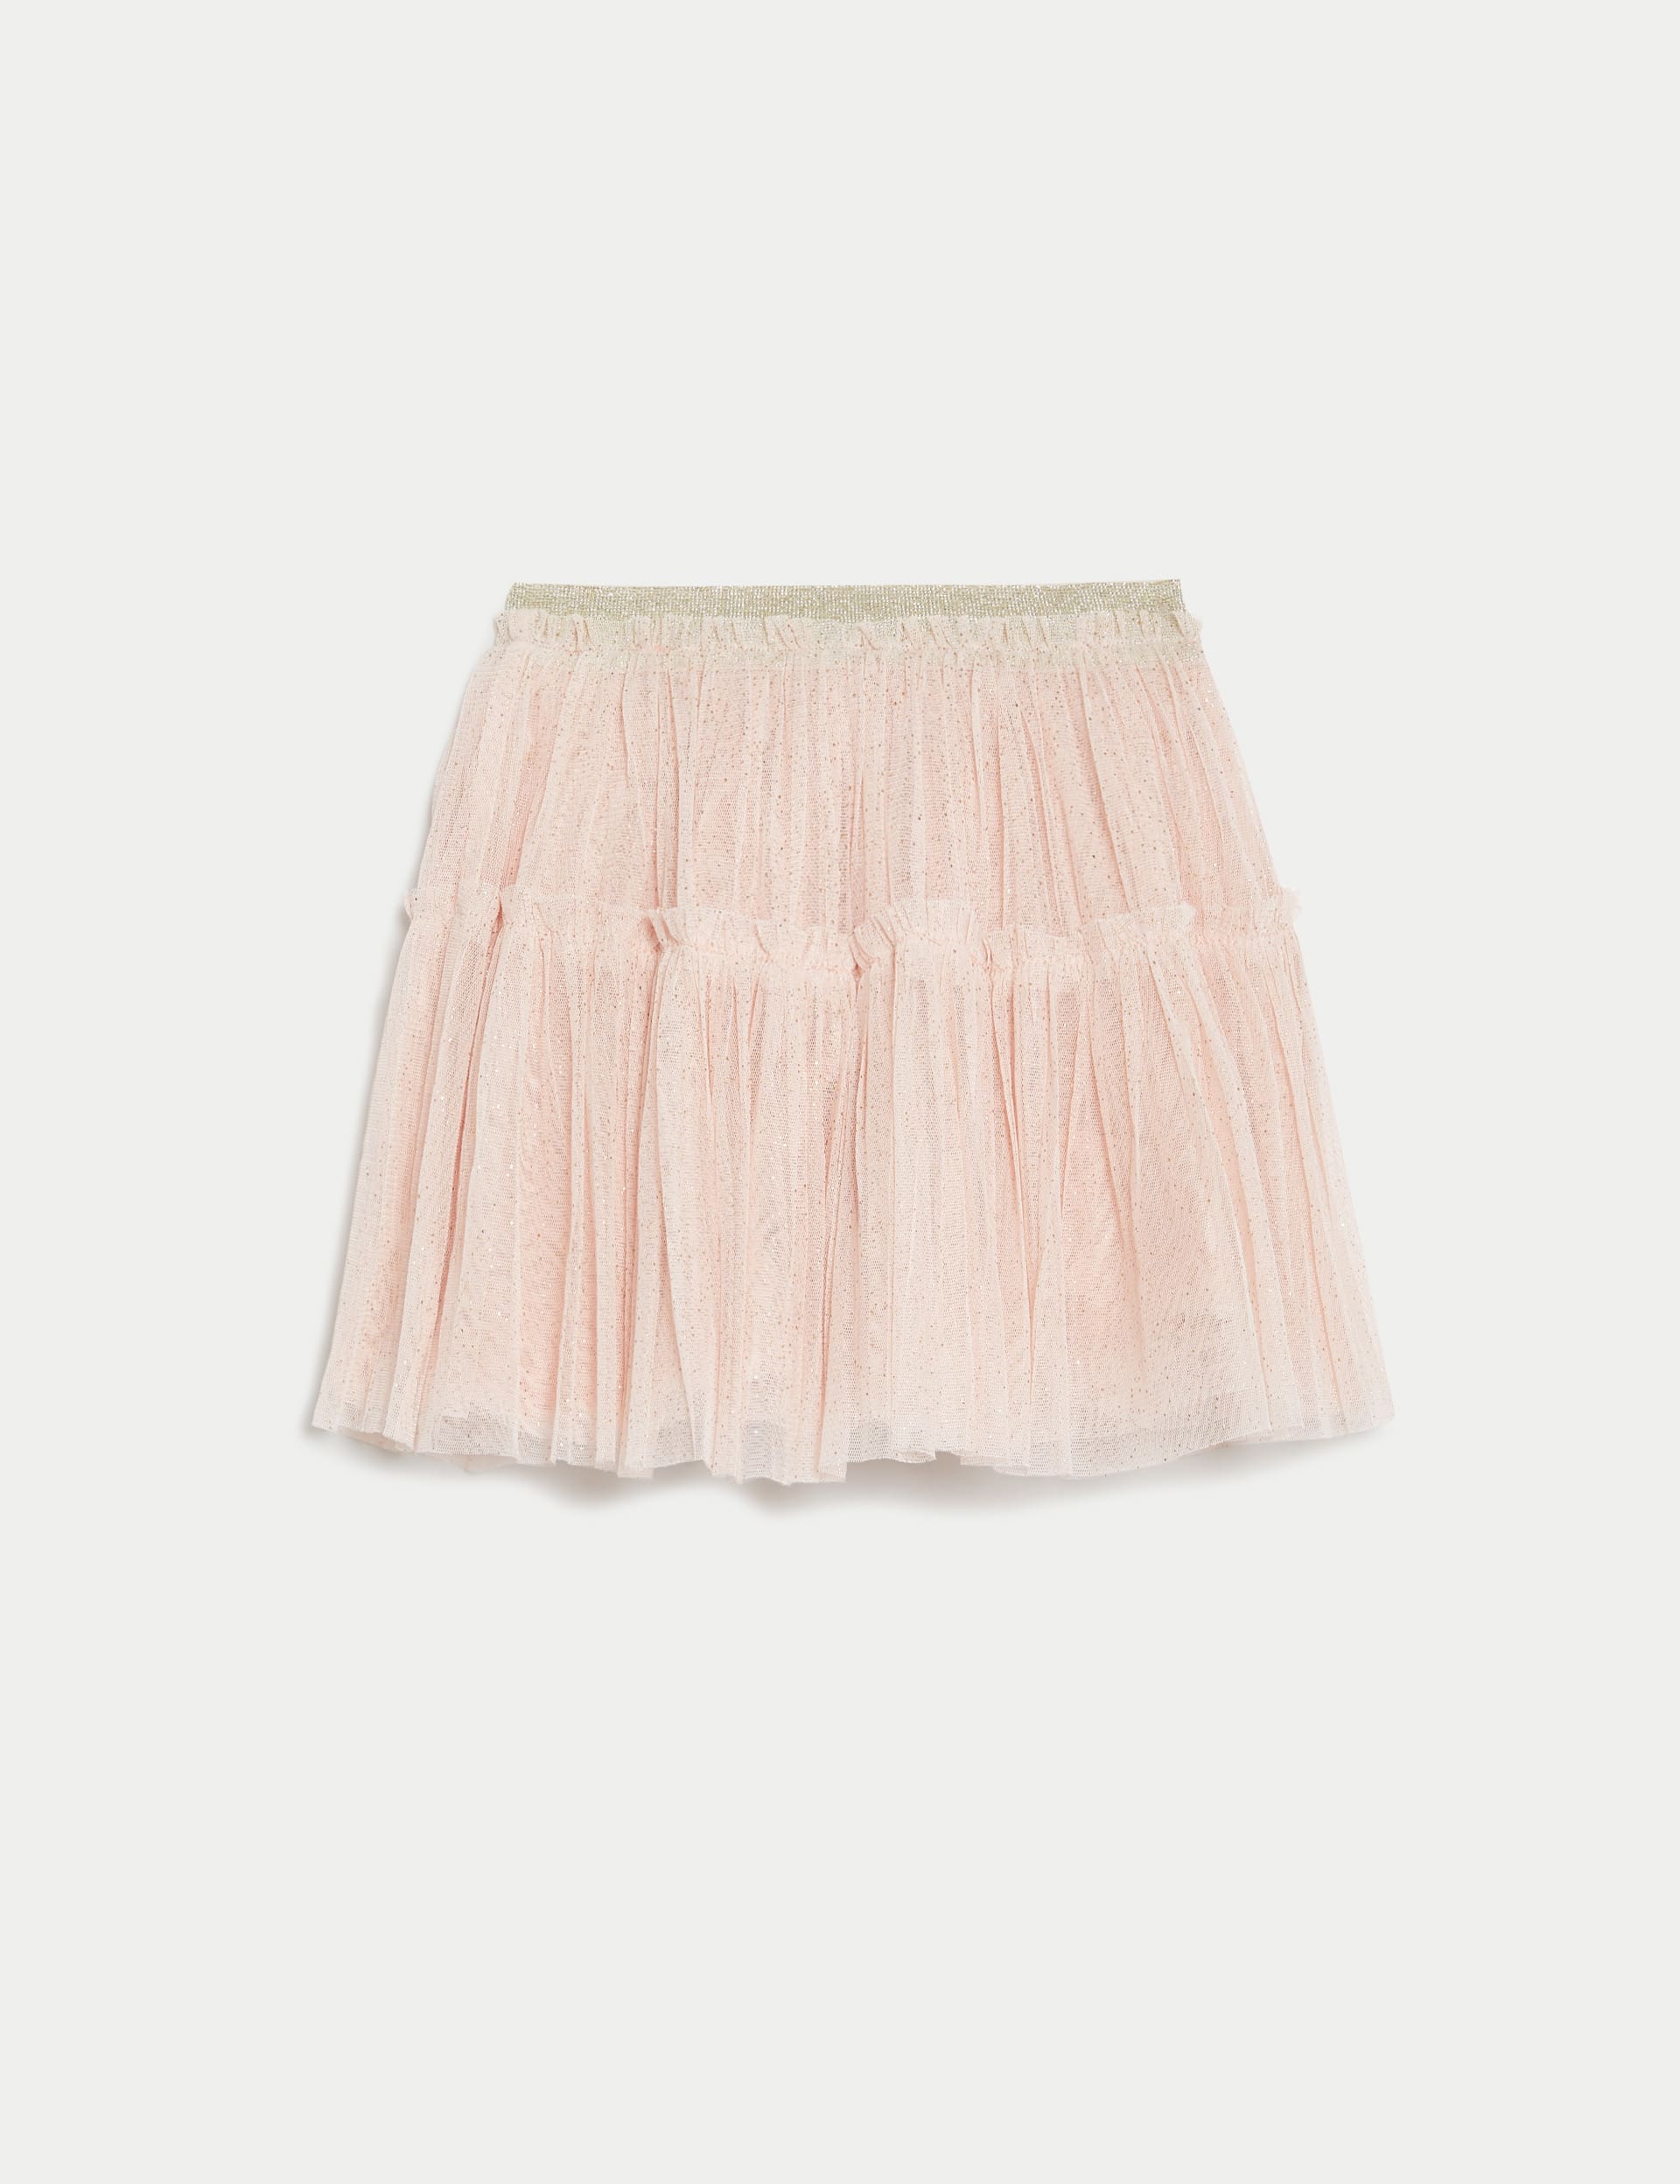 Glitter Tutu Skirt (2-8 Yrs)